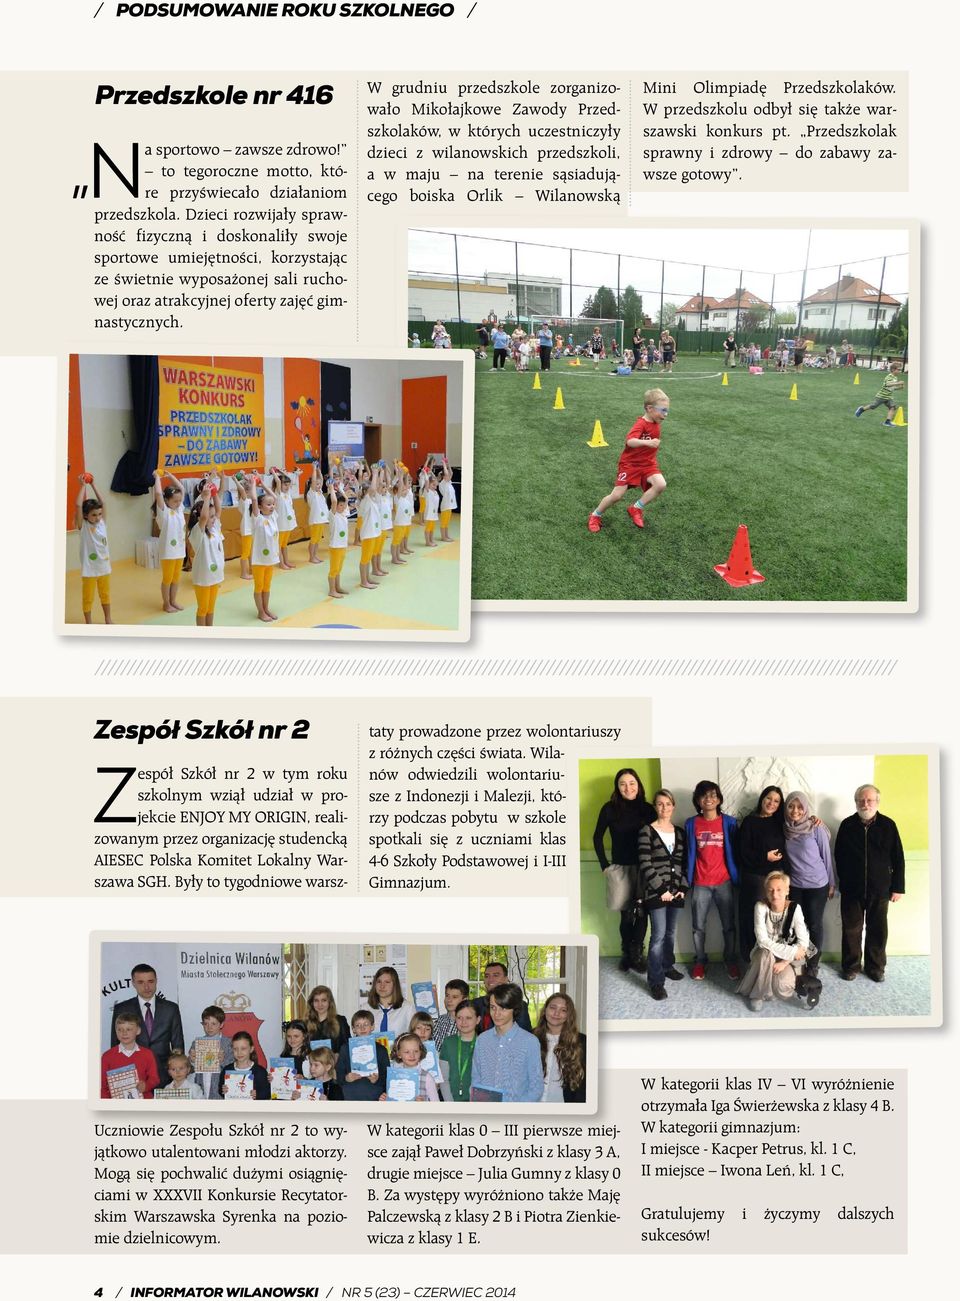 W grudniu przedszkole zorganizowało Mikołajkowe Zawody Przedszkolaków, w których uczestniczyły dzieci z wilanowskich przedszkoli, a w maju na terenie sąsiadującego boiska Orlik Wilanowską Mini